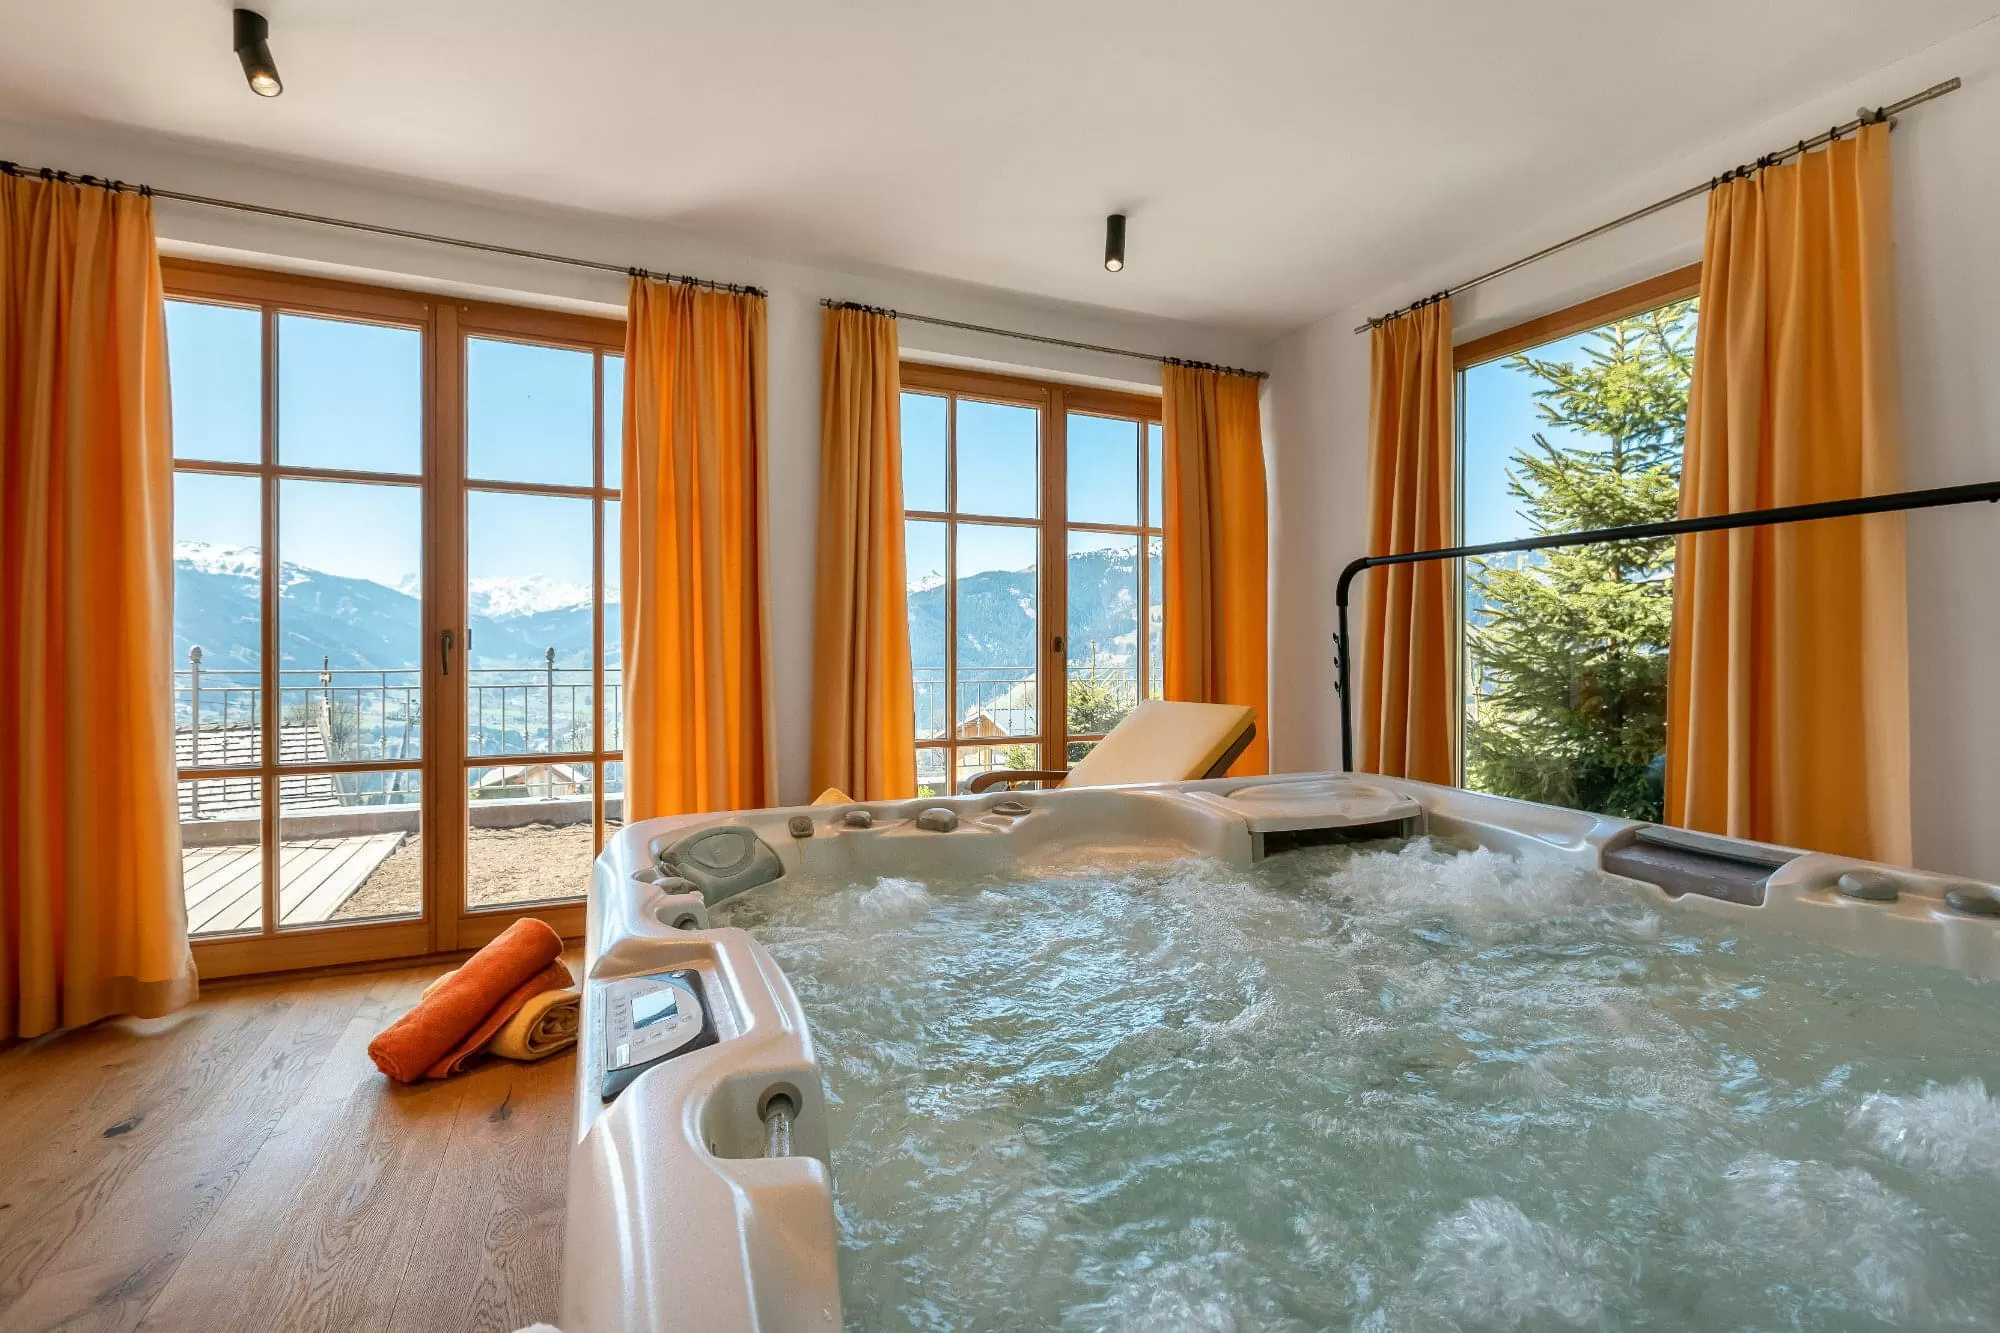 Österreich: Die besten Hotels mit Whirlpool im Zimmer